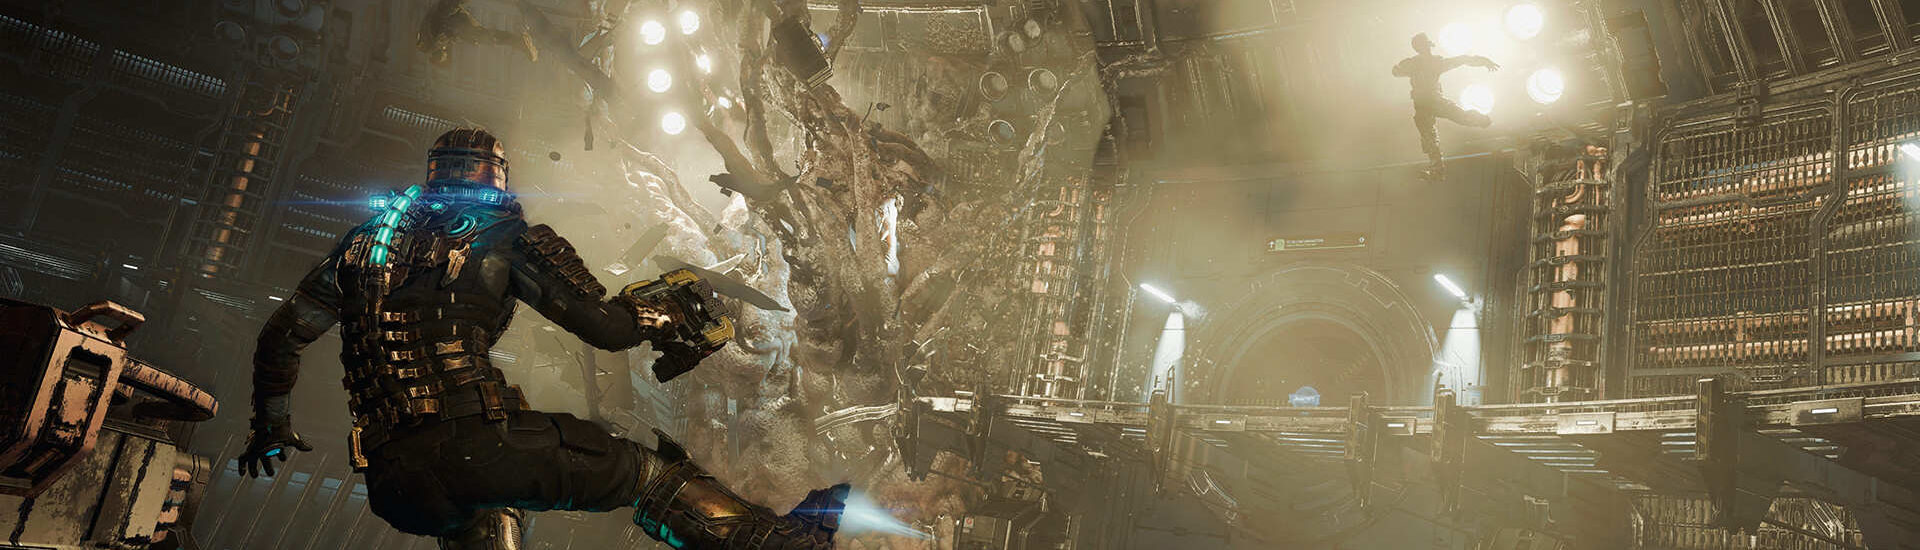 Dead Space-Remake: Blutiger Gameplay-Trailer gibt Einblicke in die Neuauflage